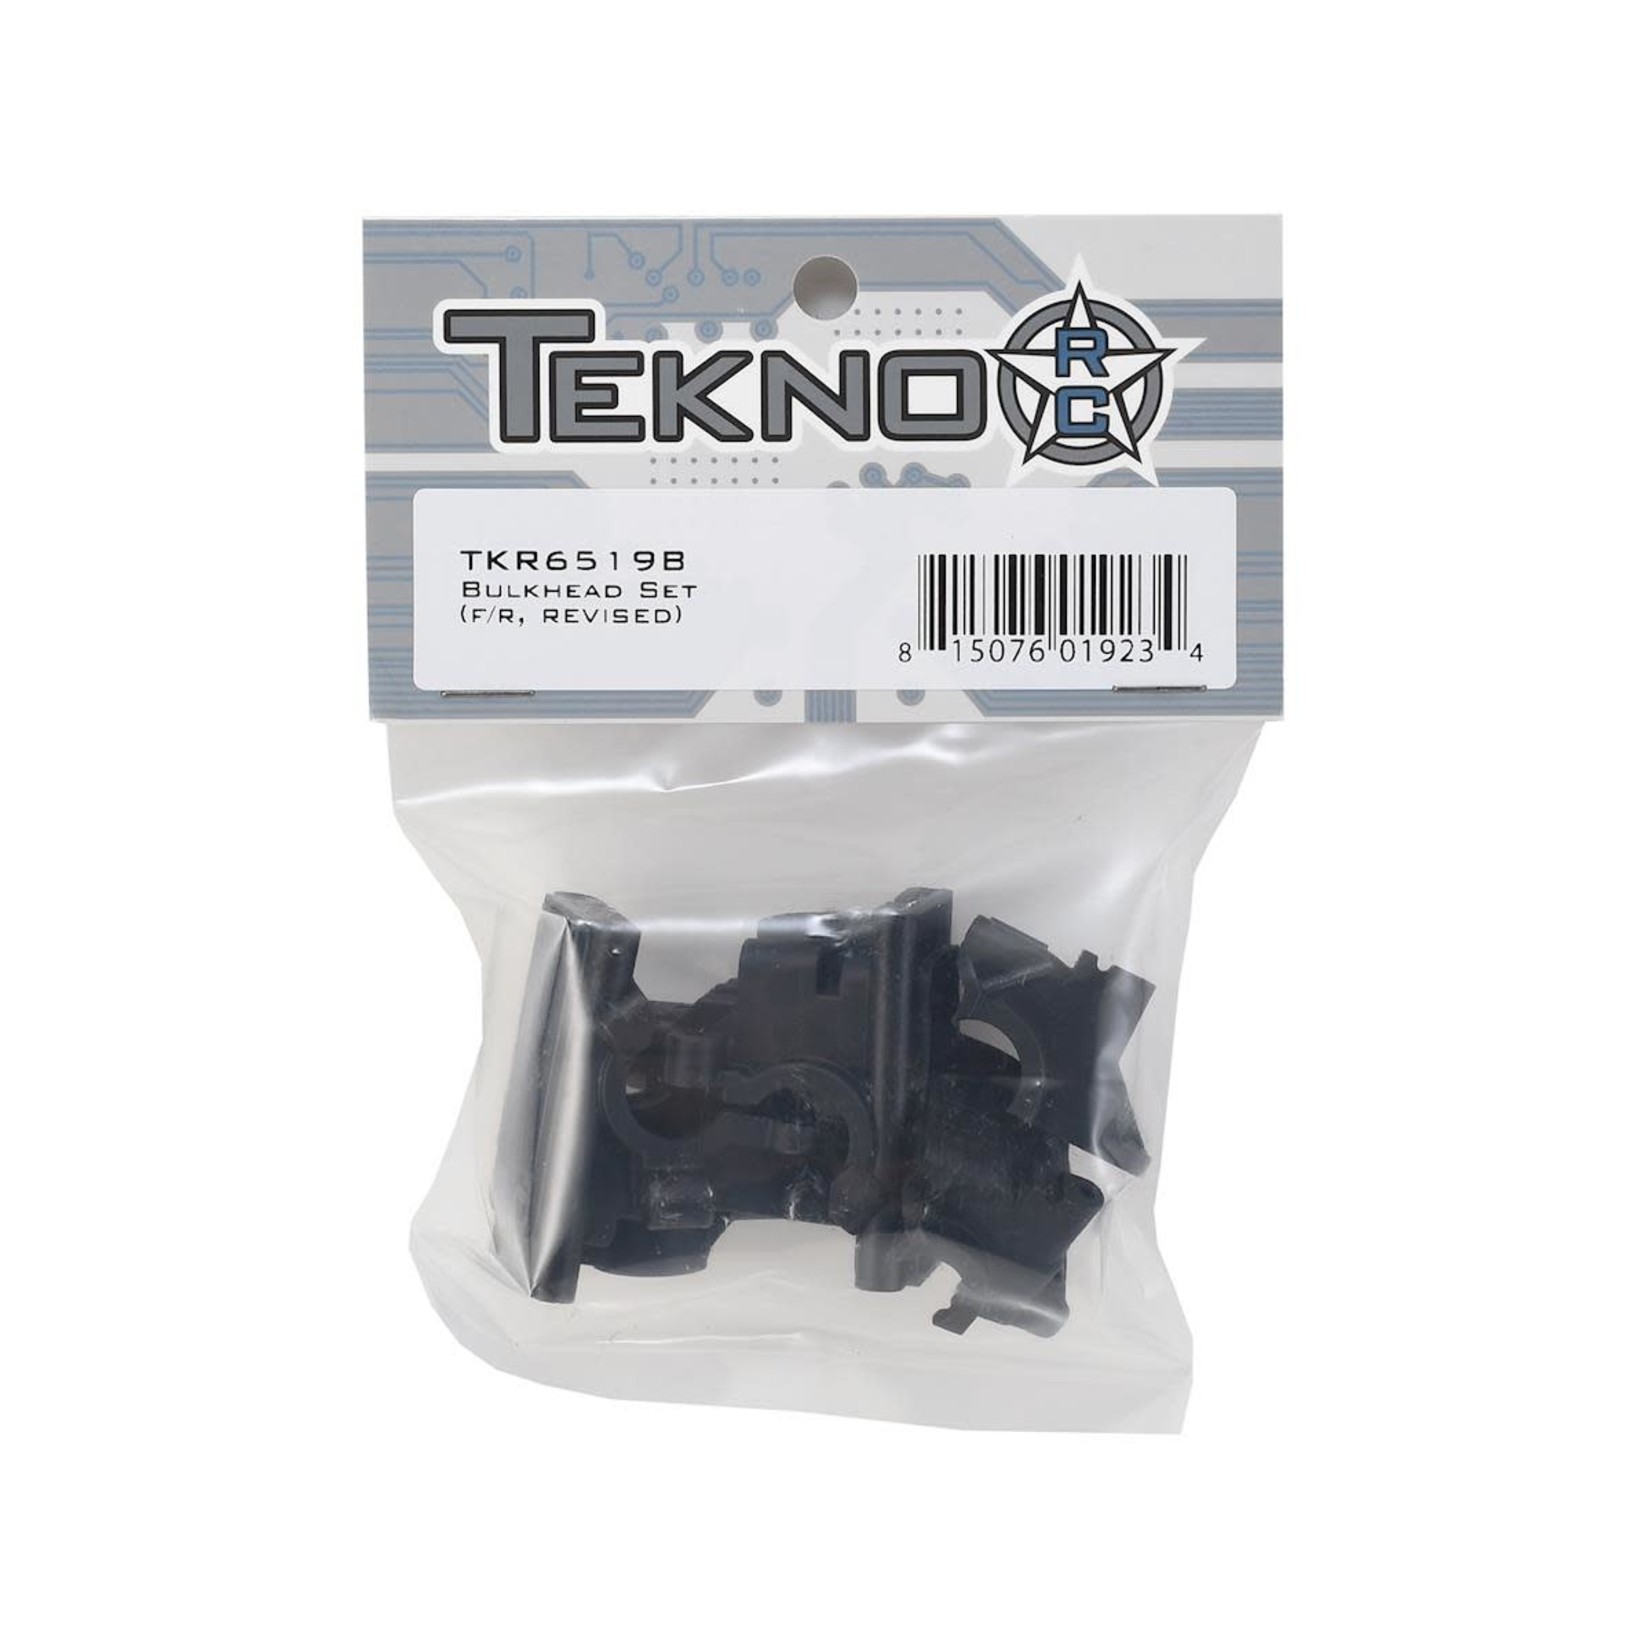 Tekno RC Tekno RC EB410/ET410 Front & Rear Bulkhead Set (Revised) #TKR6519B